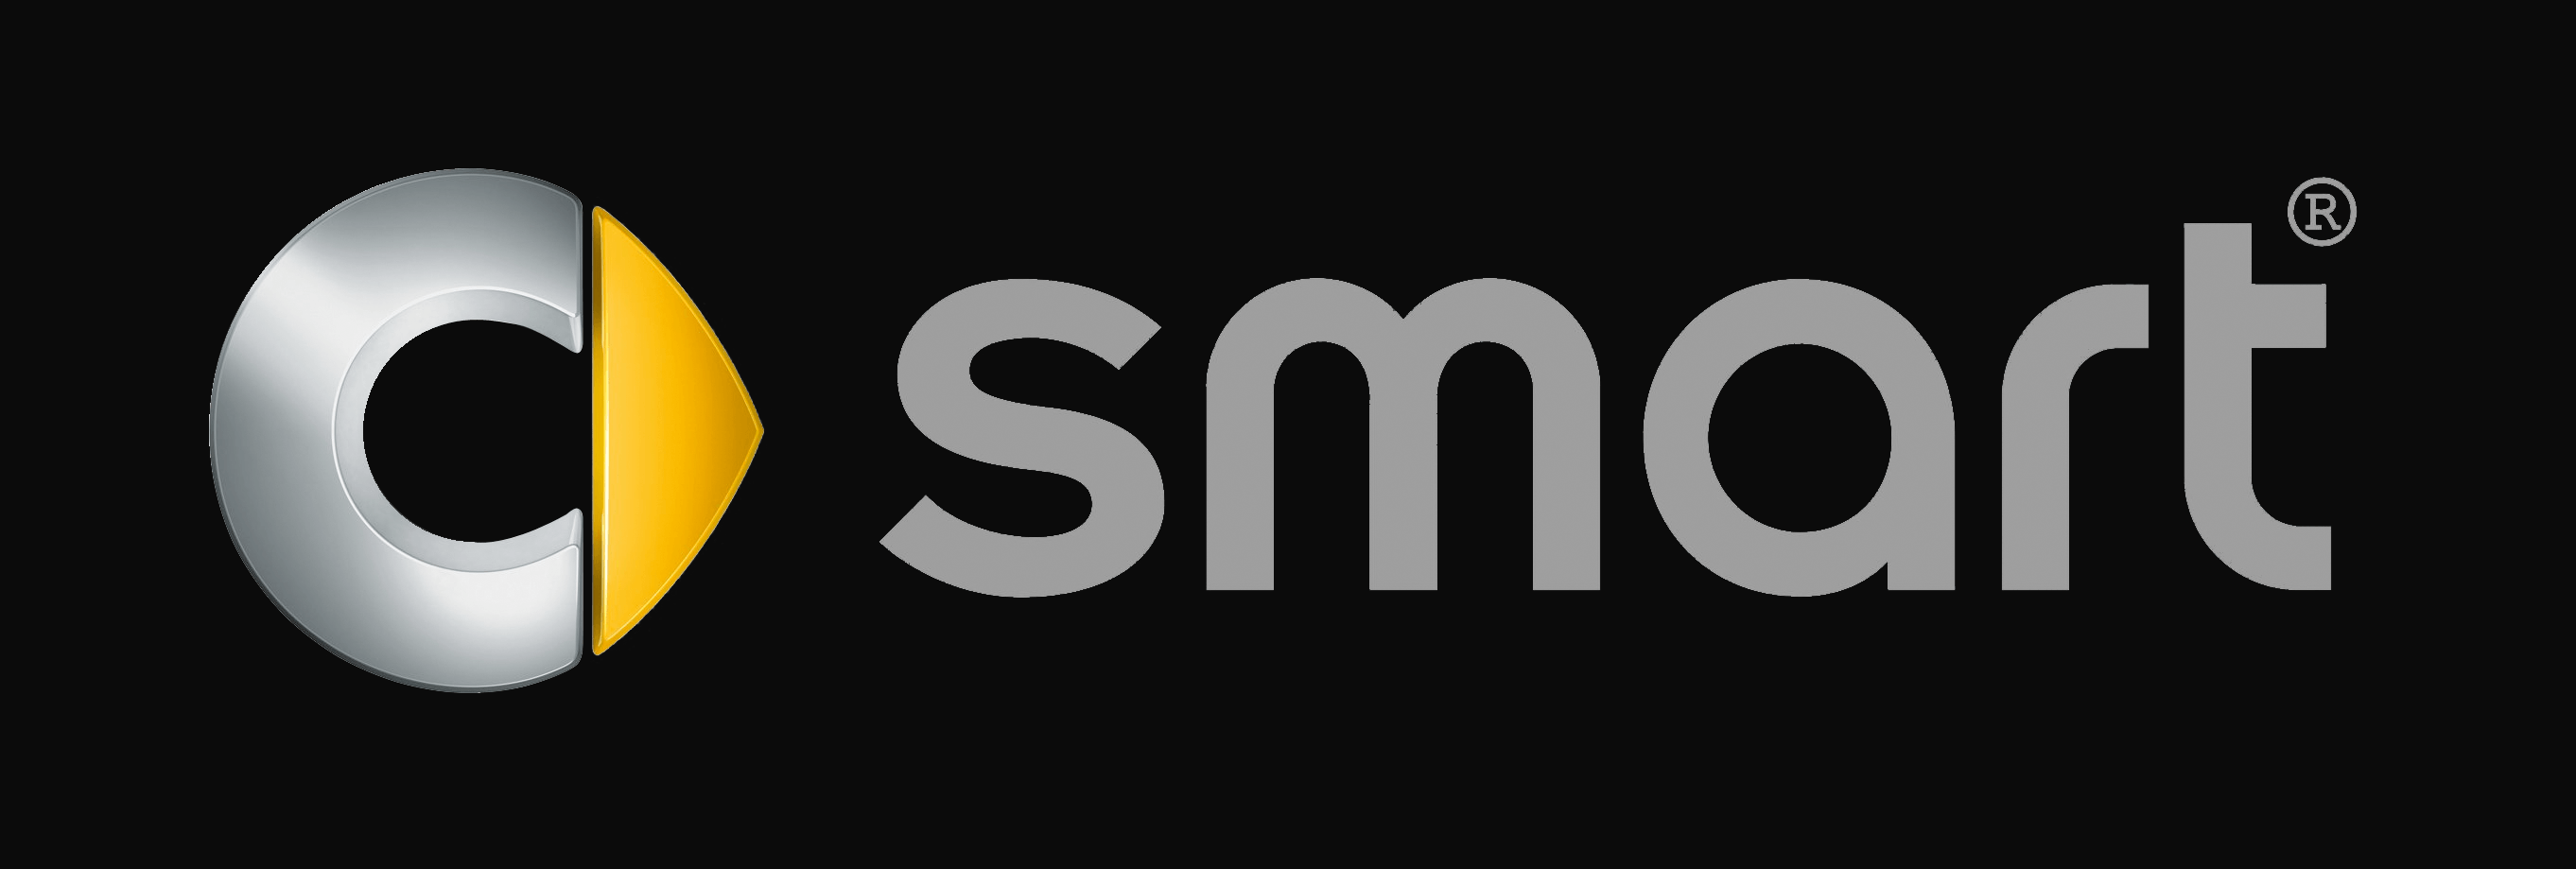 Smart Car Logo - smart Logo, smart Car Symbol Meaning And History | Car Brand Names.com